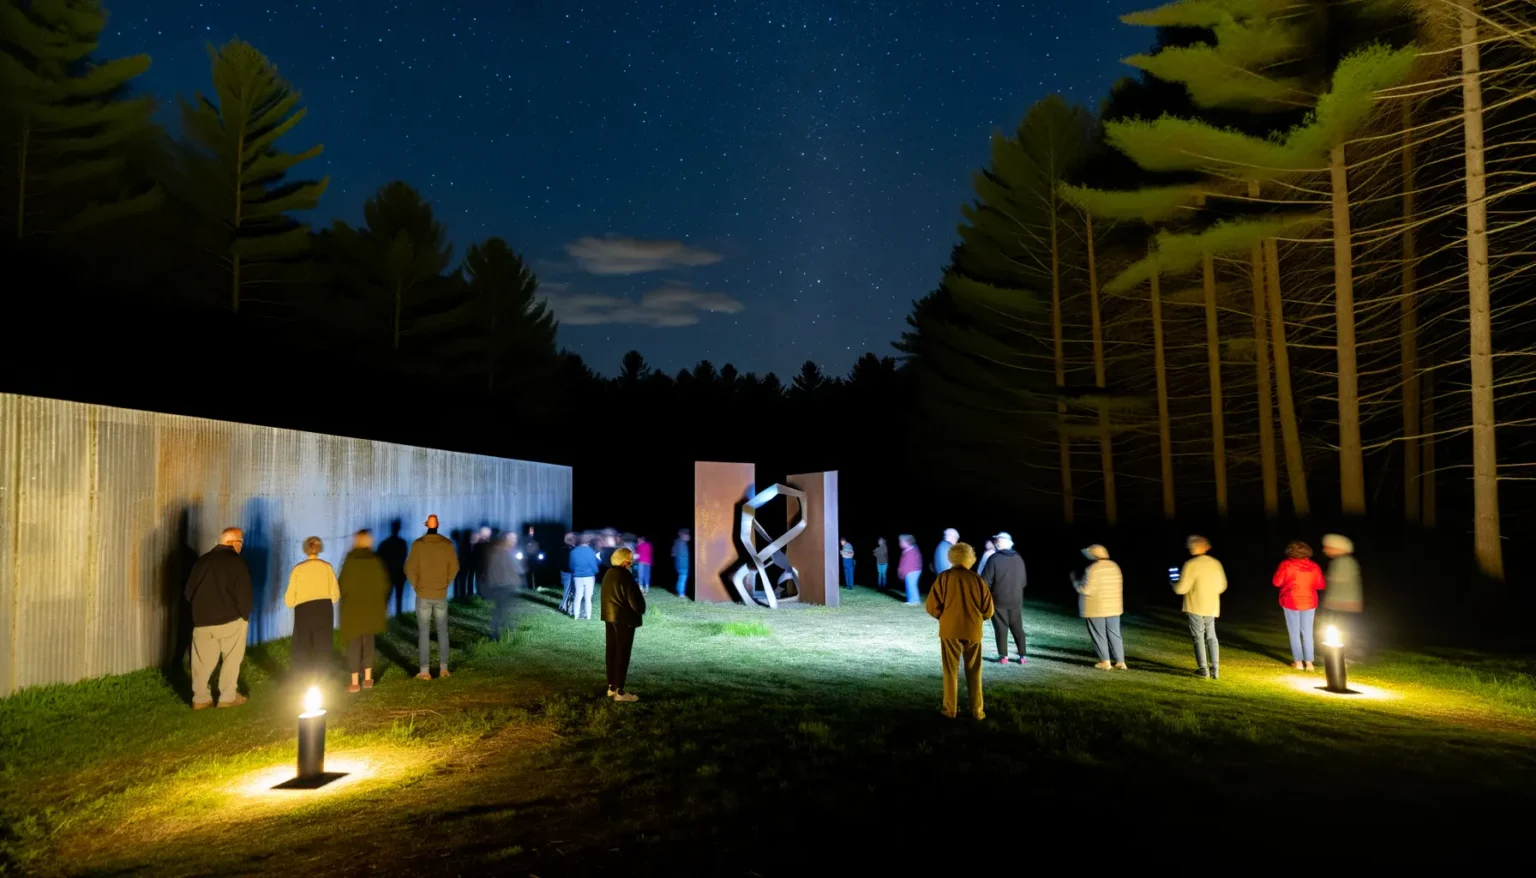 Eine Gruppe von Menschen betrachtet nachts im Freien eine Skulptur in Form einer Doppelhelix, die von Scheinwerfern beleuchtet wird. Der Himmel ist sternklar und der Hintergrund ist von dunklen Bäumen gesäumt. Einige Besucher leuchten mit Taschenlampen, während andere im gedämpften Kunstlicht des Ortes stehen.